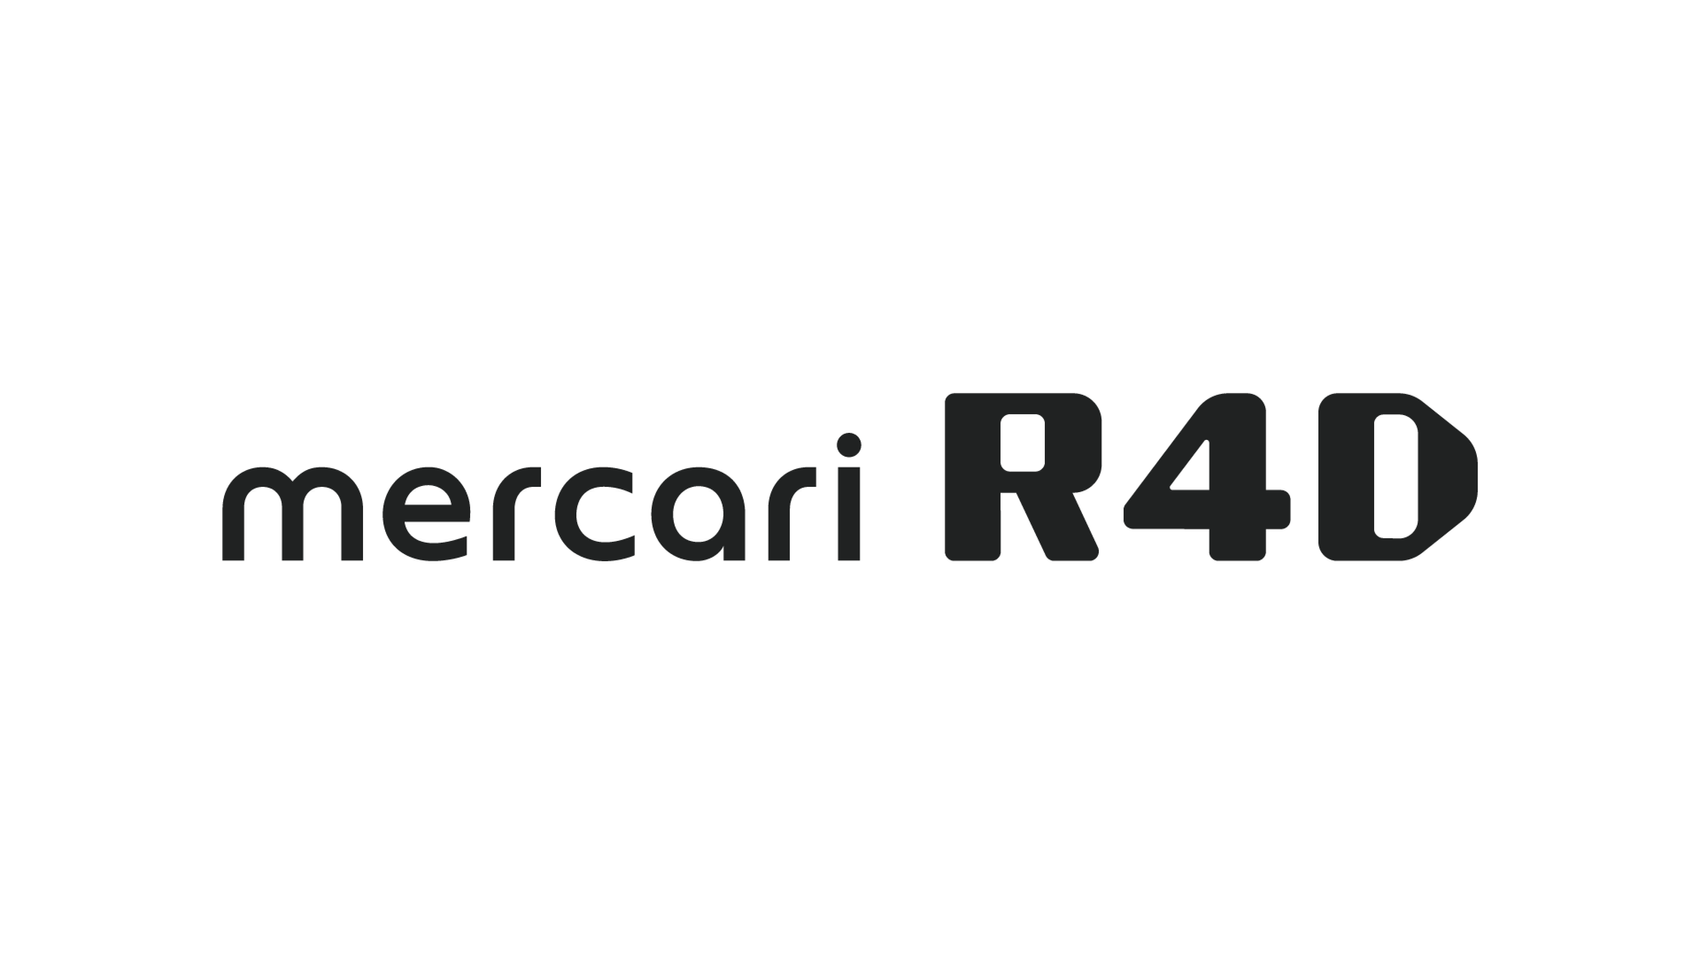 mercari R4D、大阪大学ELSIセンターと産学のコミュニティを超えた人材交流を開始